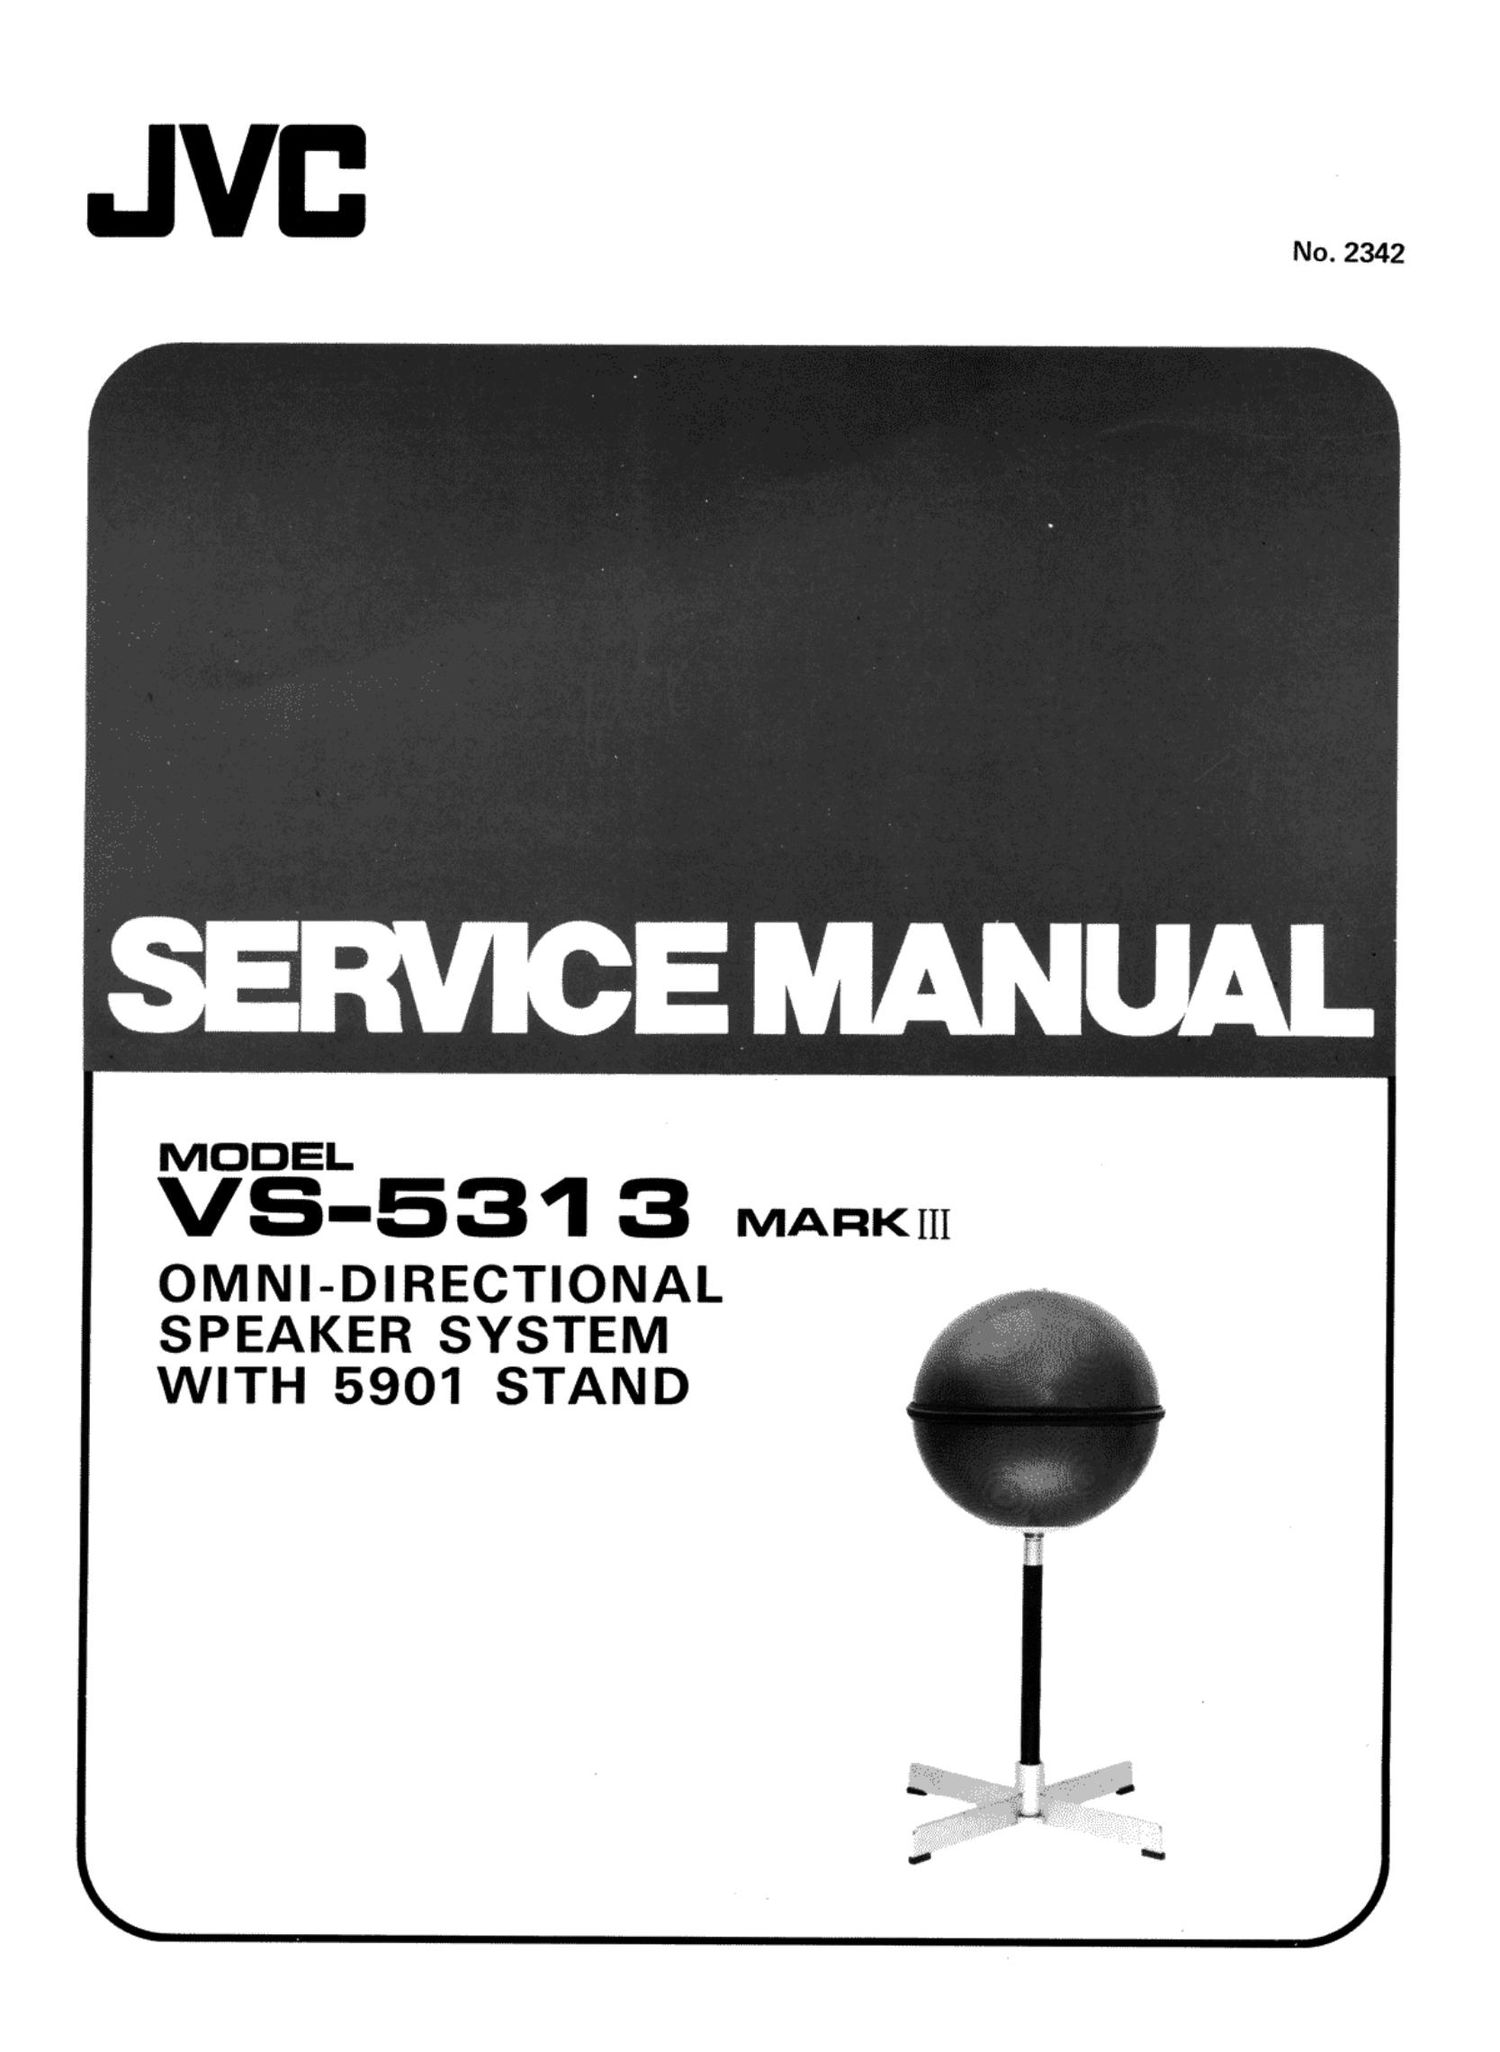 Jvc VS 5313 Service Manual